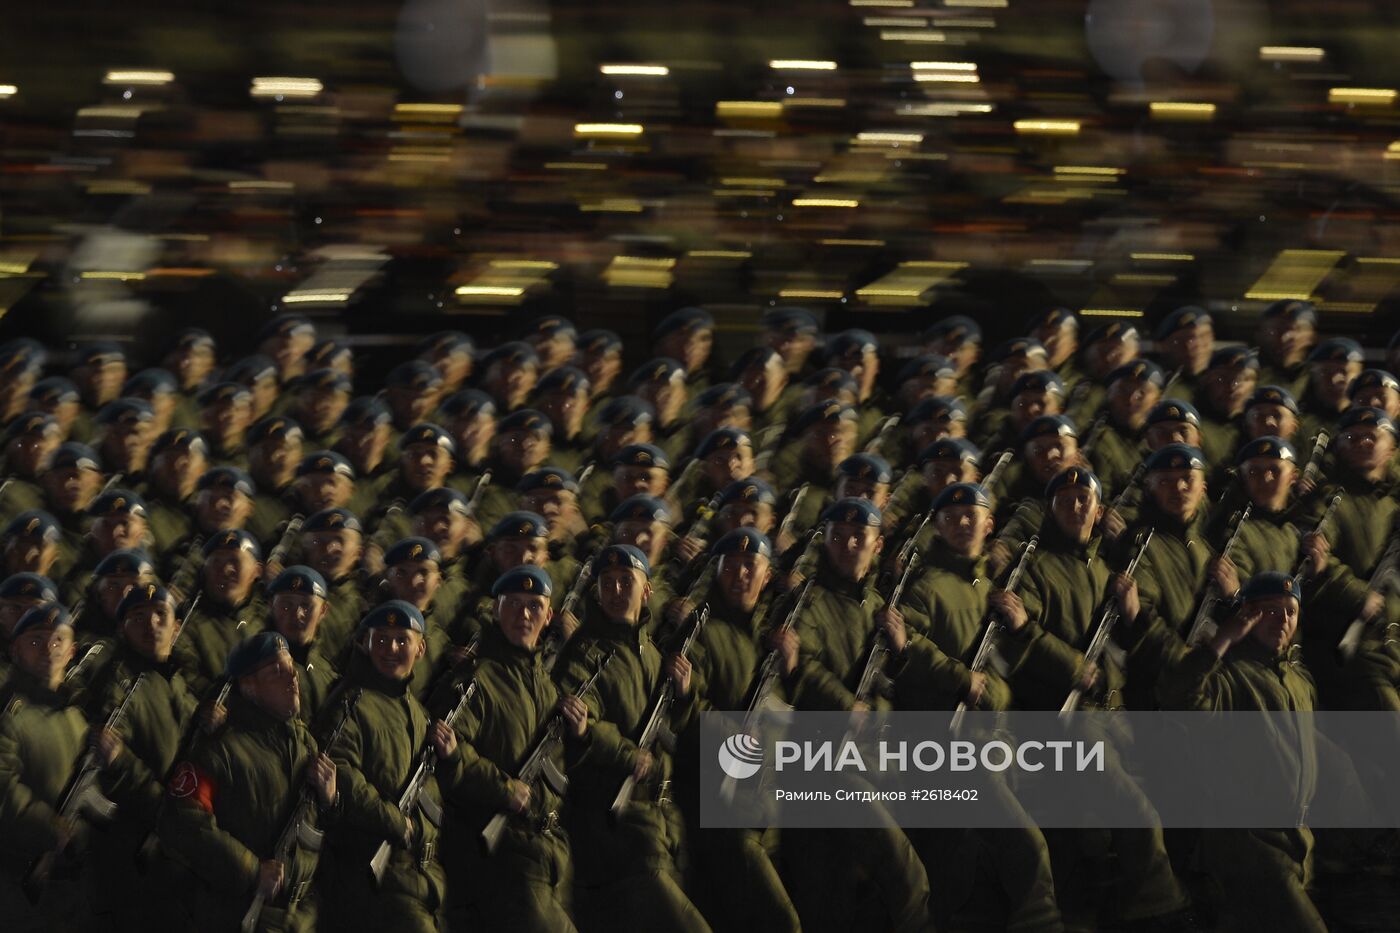 Репетиция военного парада в Москве в ознаменование 70-летия Победы в Великой Отечественной войне 1941-1945 годов